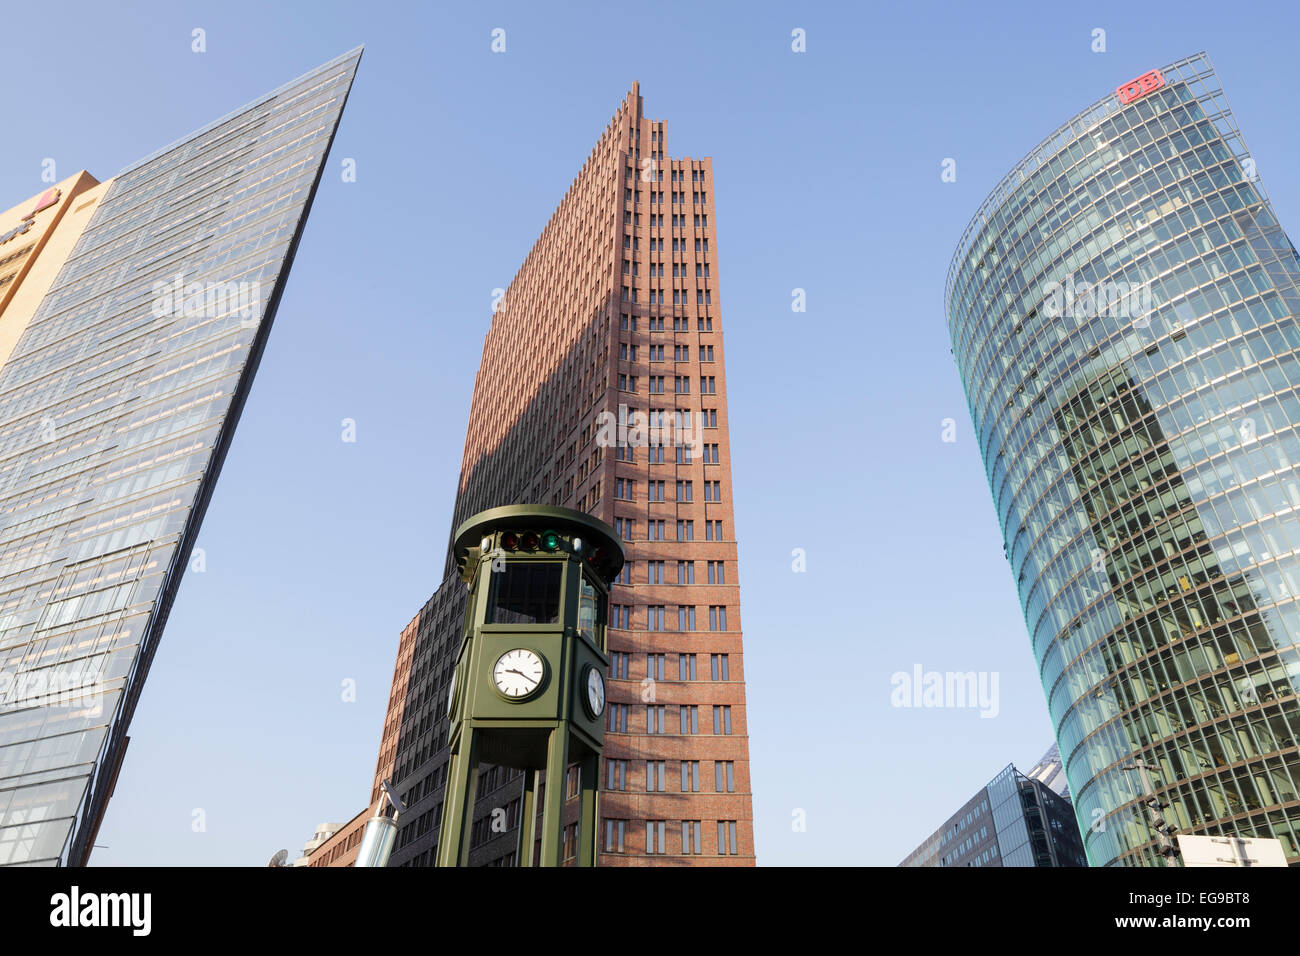 Potsdamer Platz, Potsdamer Platz 11 von Renzo Piano, Kollhoff-Tower, DB-Bahn-Tower und historischen Ampel, Berlin, Keim Stockfoto